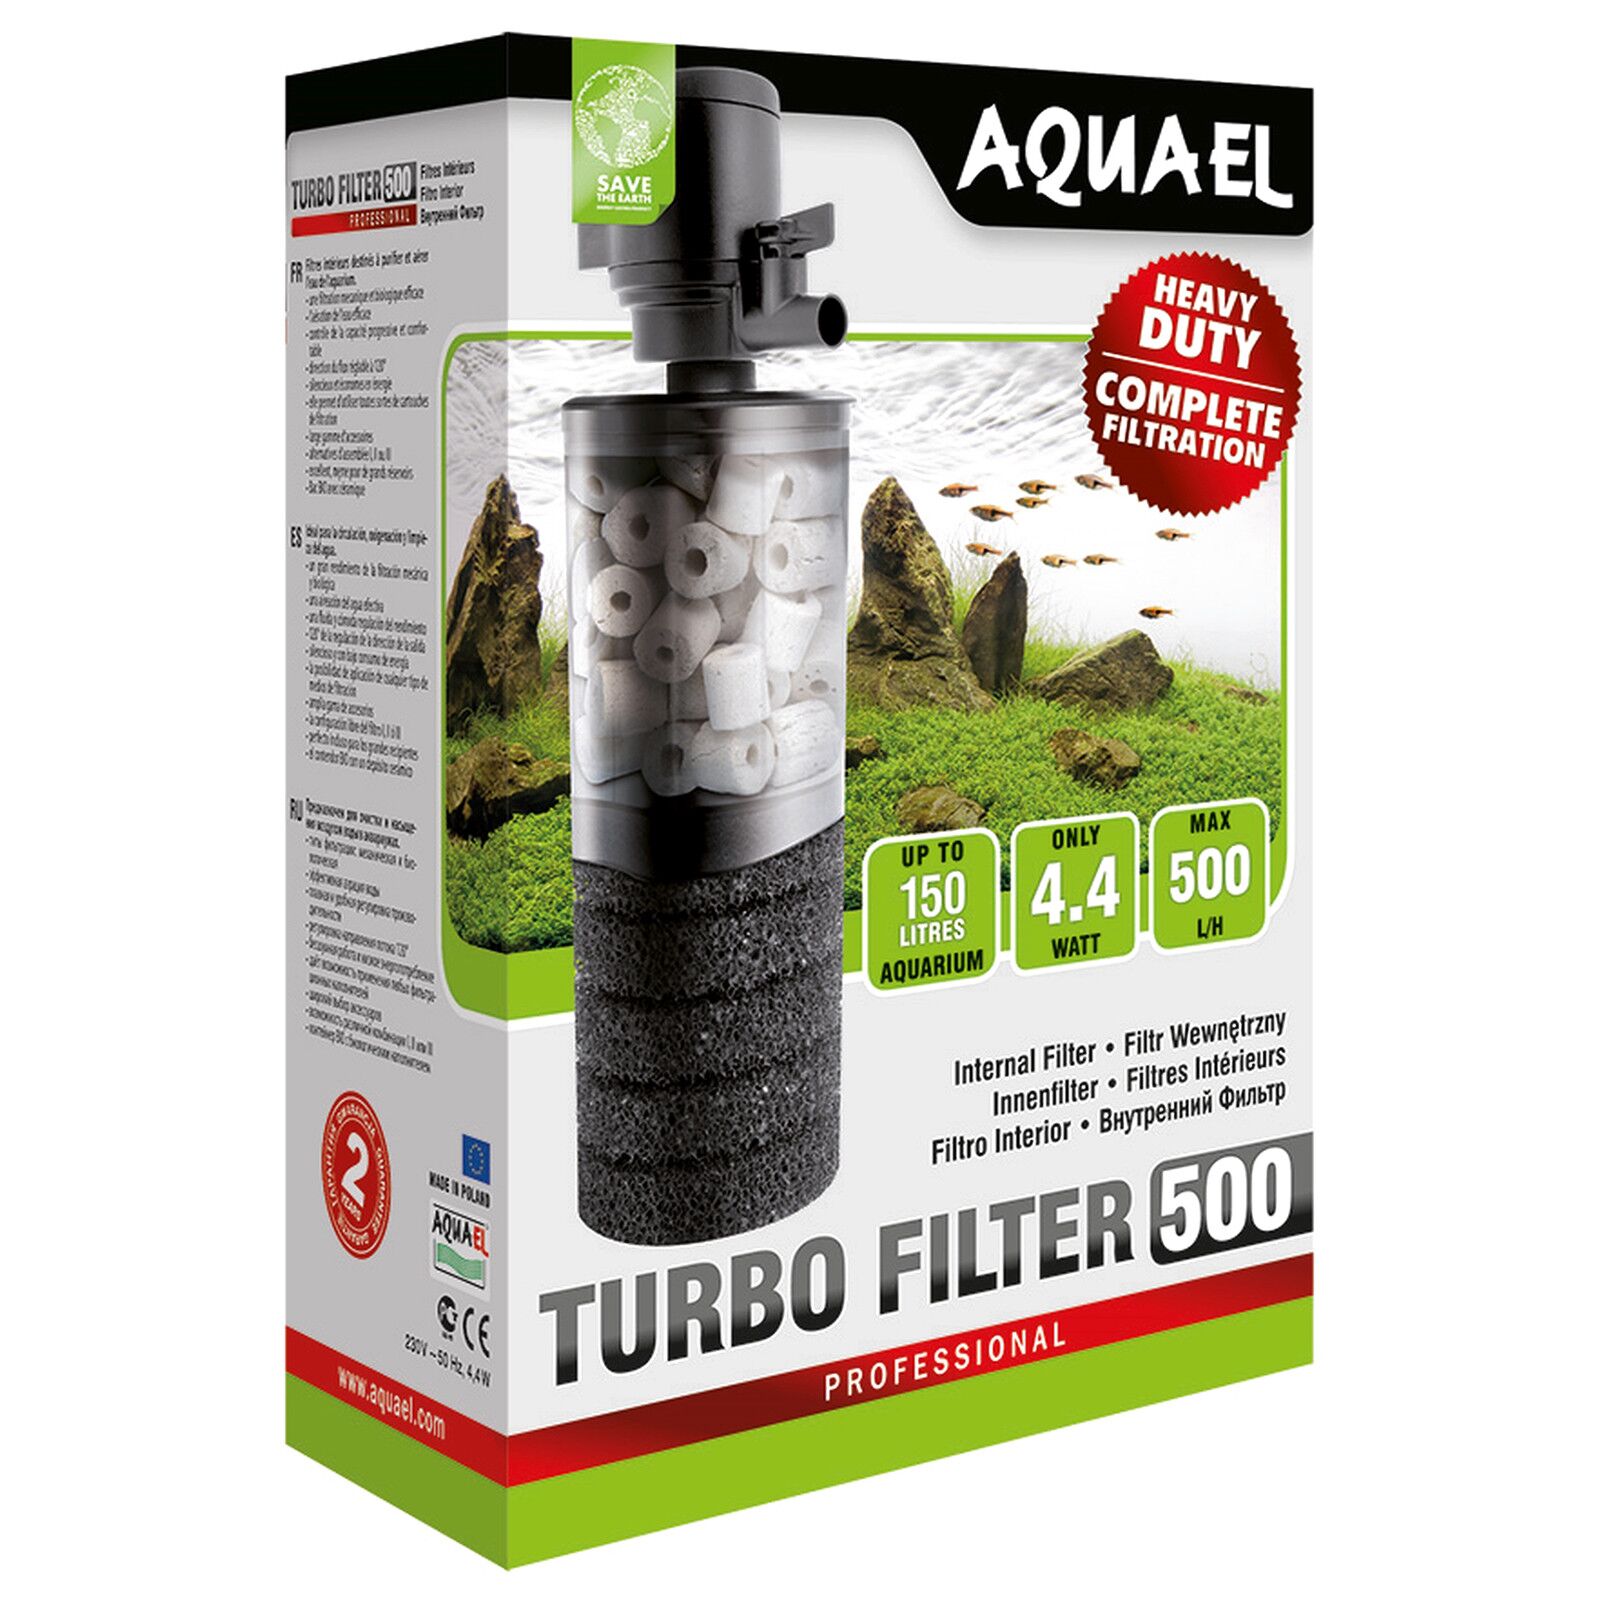 Aquael - Turbo Filter